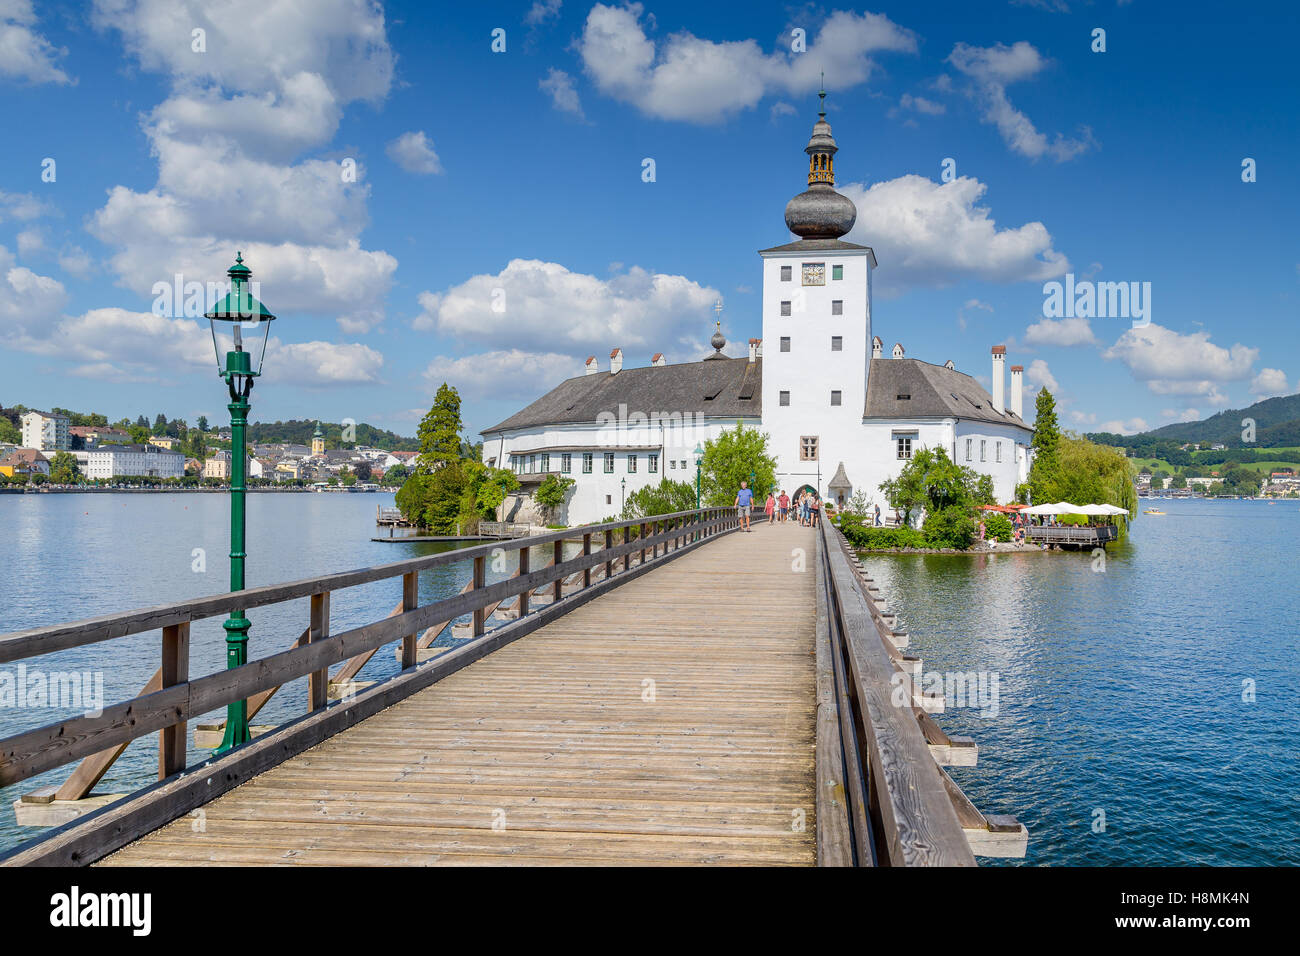 Bellissima vista del famoso Schloss Ort con ponte in legno sul Lago Traunsee in una giornata di sole con cielo blu e nuvole in estate, Gmunden, Austria superiore Foto Stock